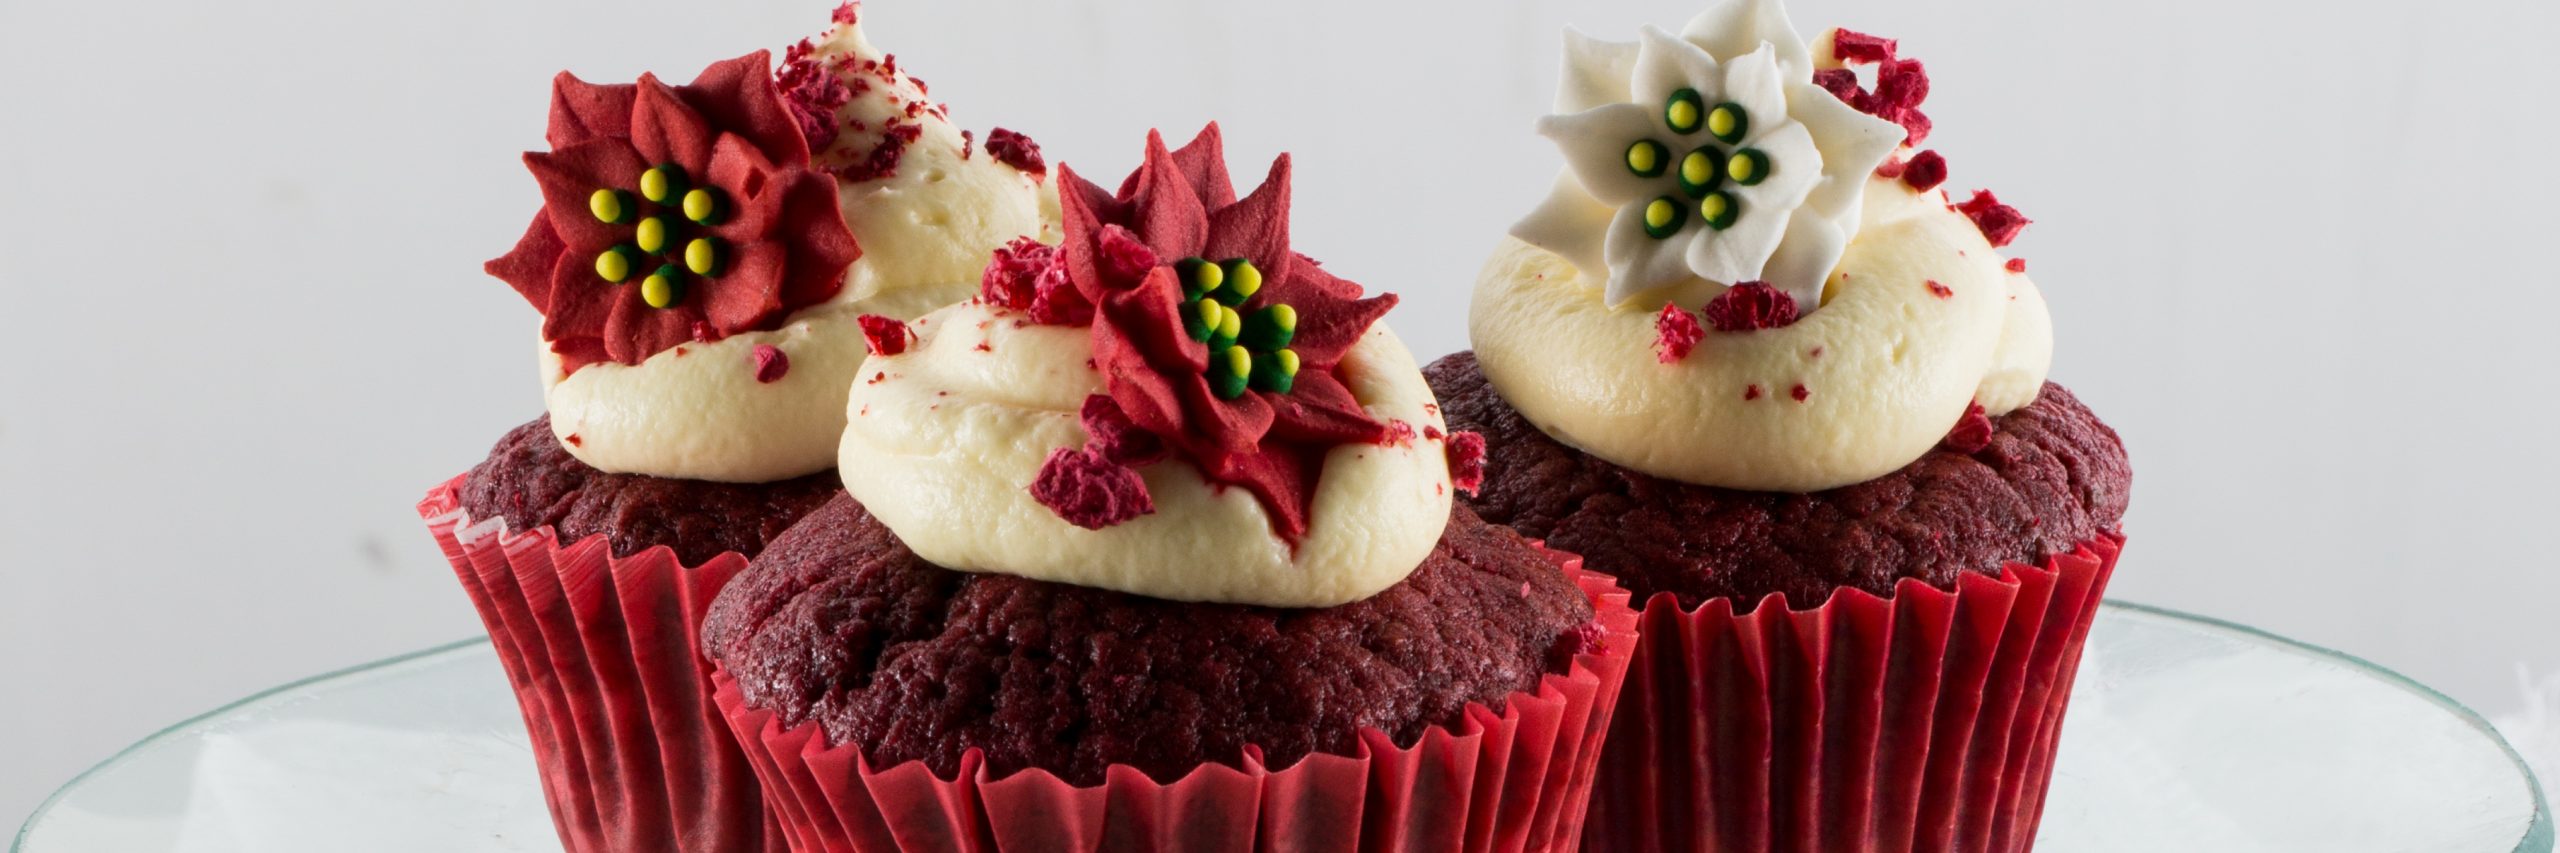 LeaderBrand Beetroot Red Velvet Cake Recipe header